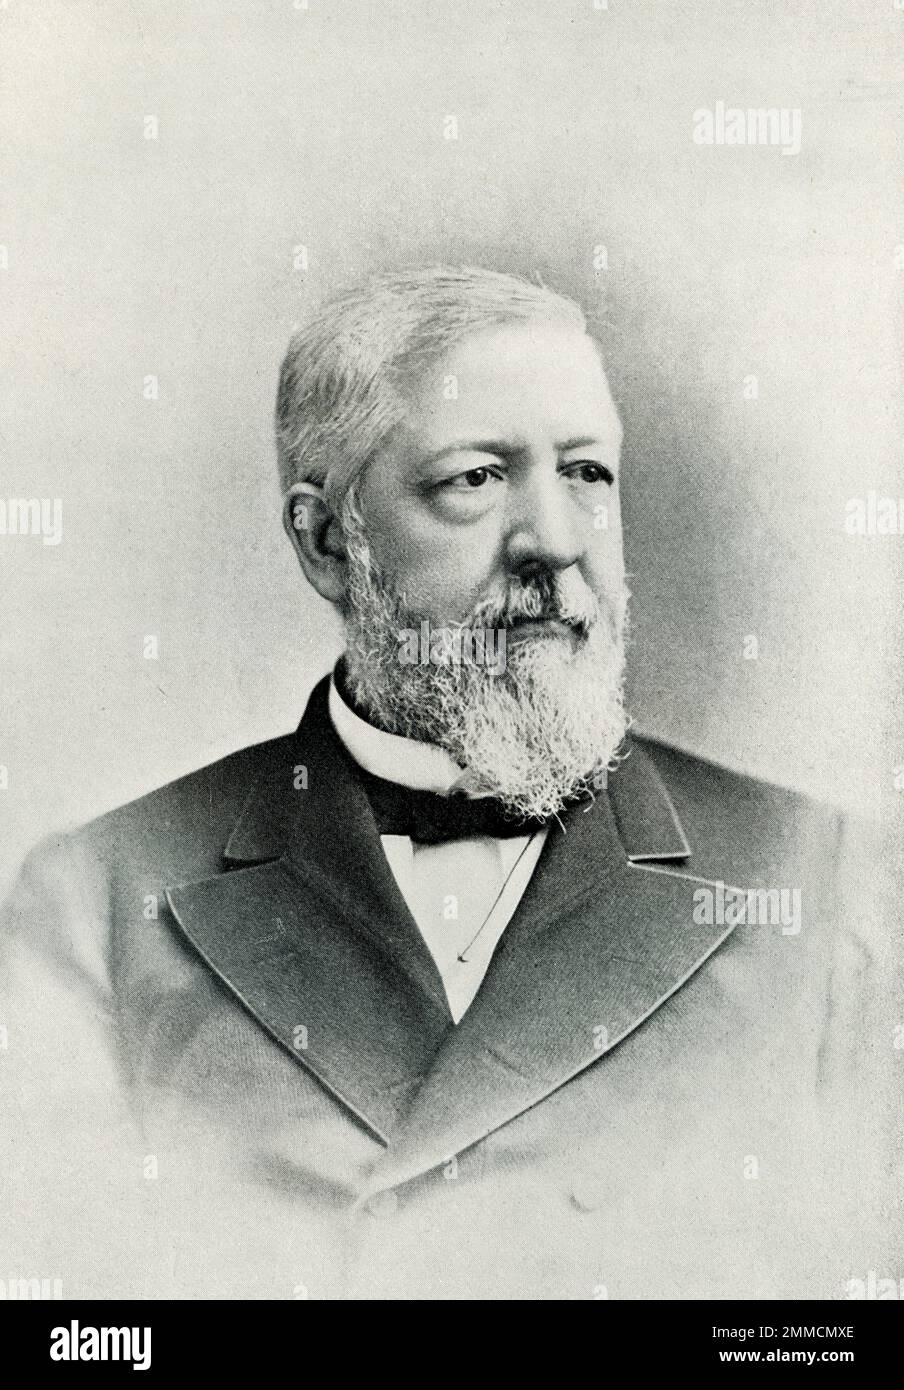 James Gillespie Blaine (1830-1893) war ein amerikanischer Politiker. Er hatte mehrere öffentliche Ämter, darunter US-Vertreter aus Maine von 1863 bis 1876 und US-Vertreter Staatssekretär im Jahr 1881 und von 1889-1892. Seine unsachgemäße Einflussnahme im Fall einer Eisenbahn in Arkansas verhinderte, dass er 1876 zum Präsidenten ernannt wurde. 1884 wurde er zum Präsidenten ernannt, aber von den Demokraten besiegt. Er war maßgeblich an der Gründung des ersten Panamerikanischen Kongresses beteiligt. Stockfoto